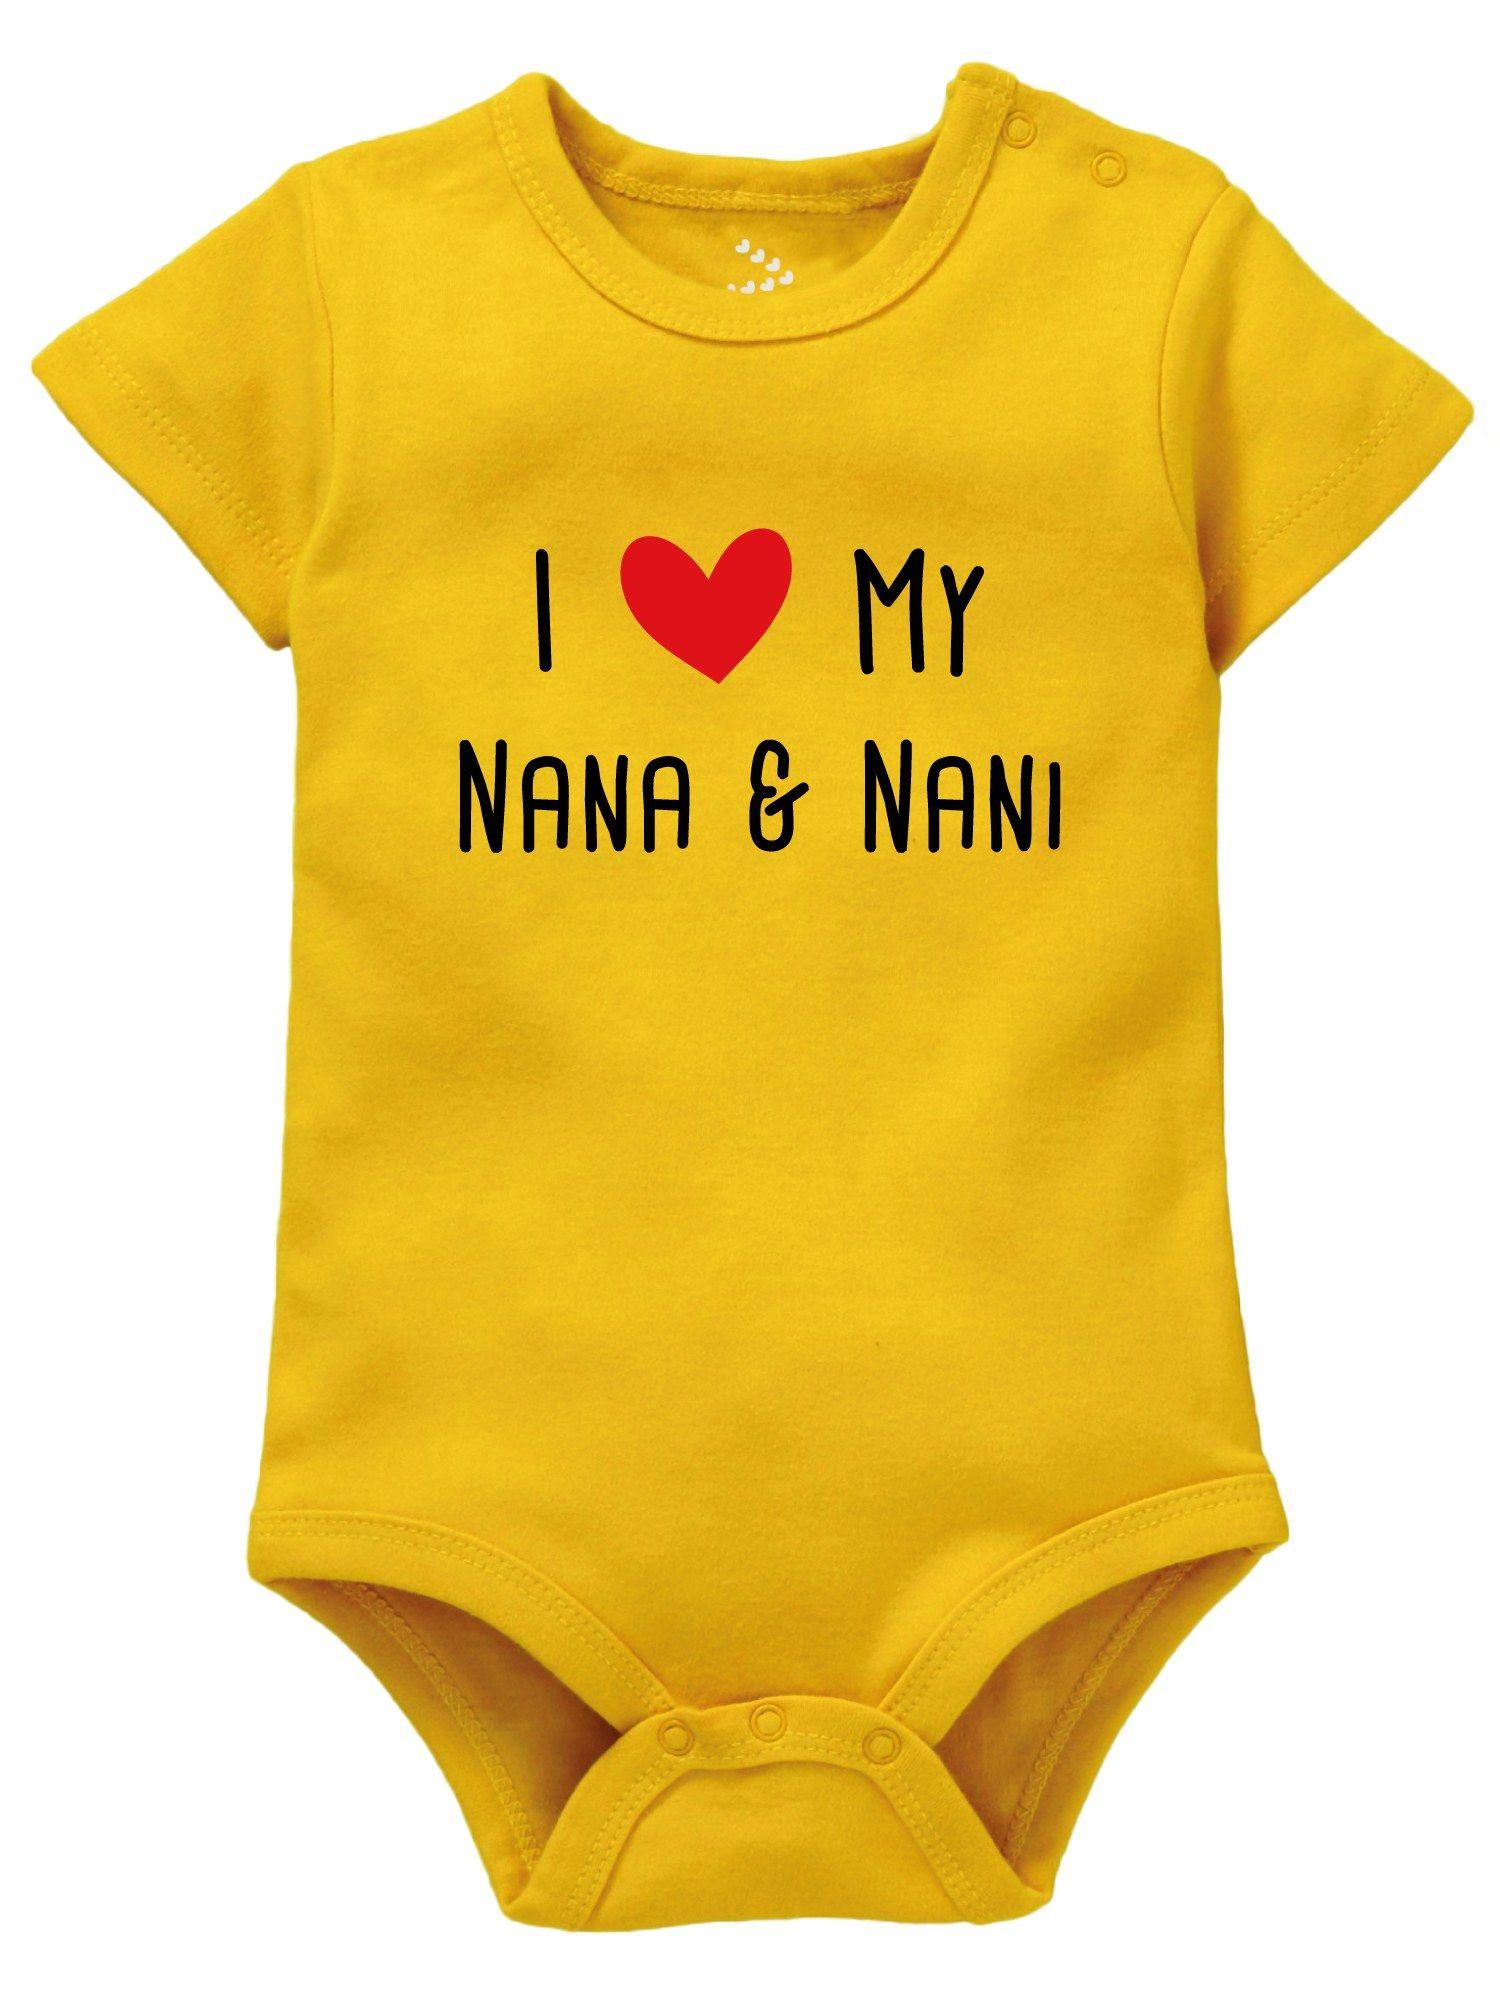 grandparents i love heart nana nani bodysuit yellow